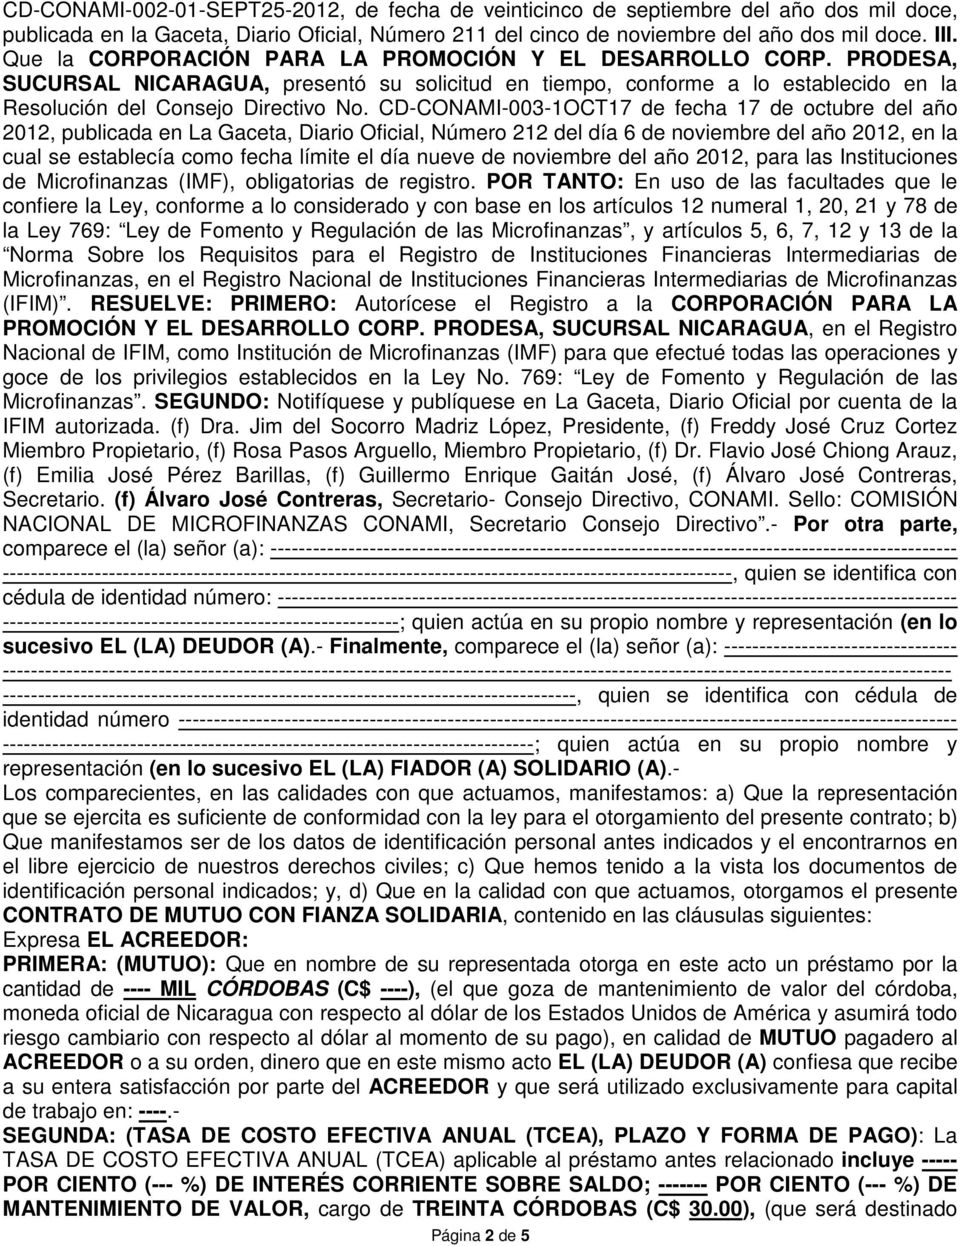 CD-CONAMI-003-1OCT17 de fecha 17 de octubre del año 2012, publicada en La Gaceta, Diario Oficial, Número 212 del día 6 de noviembre del año 2012, en la cual se establecía como fecha límite el día